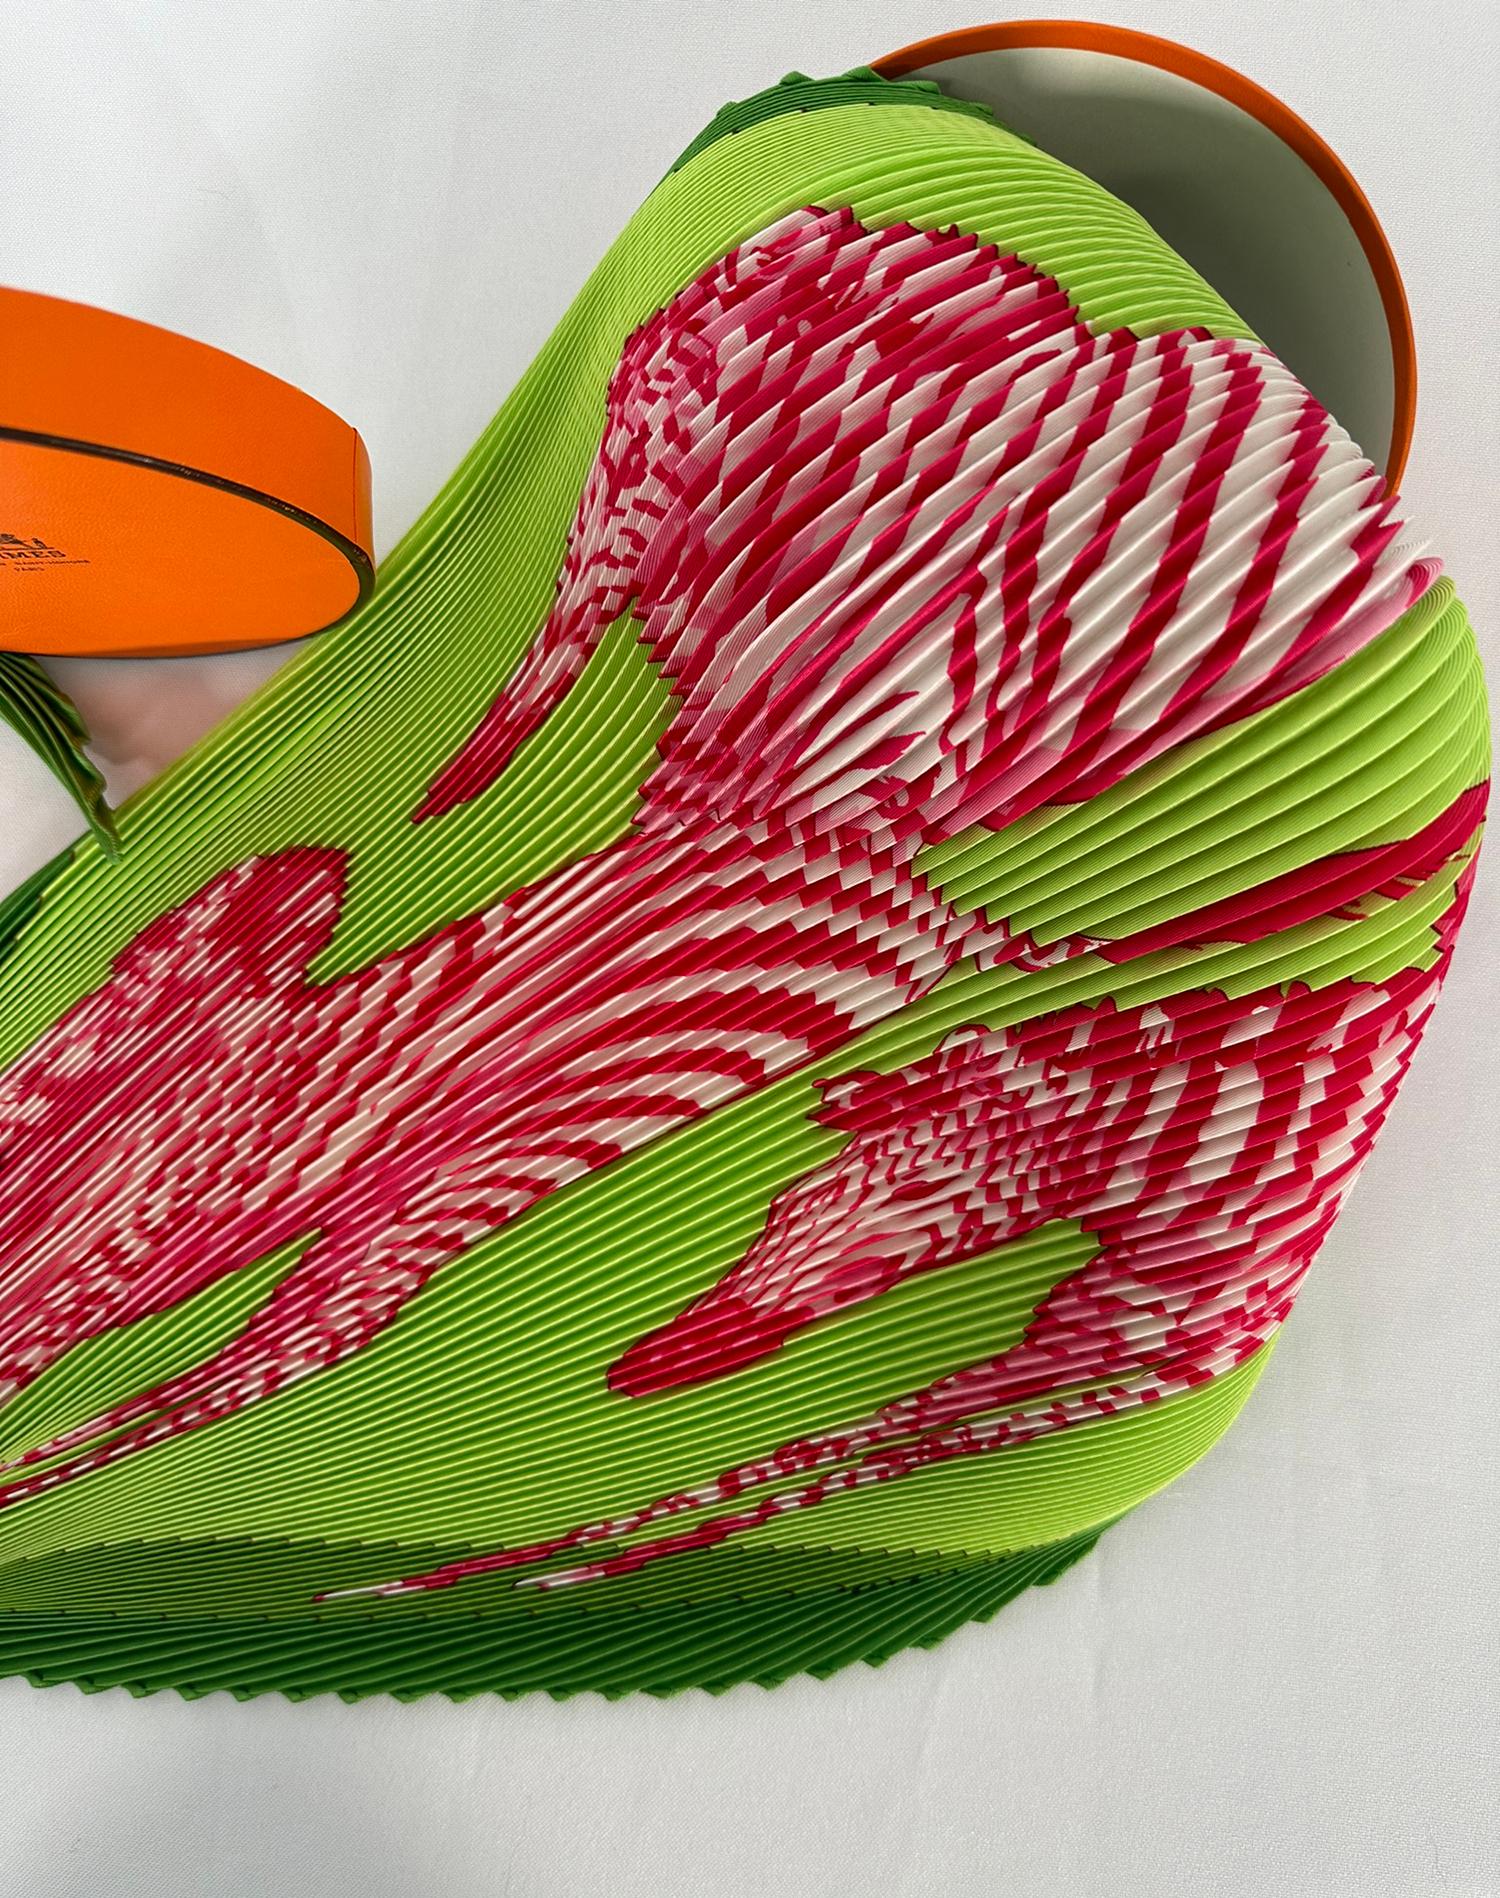 Hermes hat 2012 seine Plissee-Schals eingestellt. Der begehrte Hermès Les Zebres II Seidenplissee-Schal zeigt springende Zebras in leuchtendem Pink und Weiß vor einem üppigen lindgrünen Hintergrund, der von einer grasgrünen Bordüre abgesetzt ist.